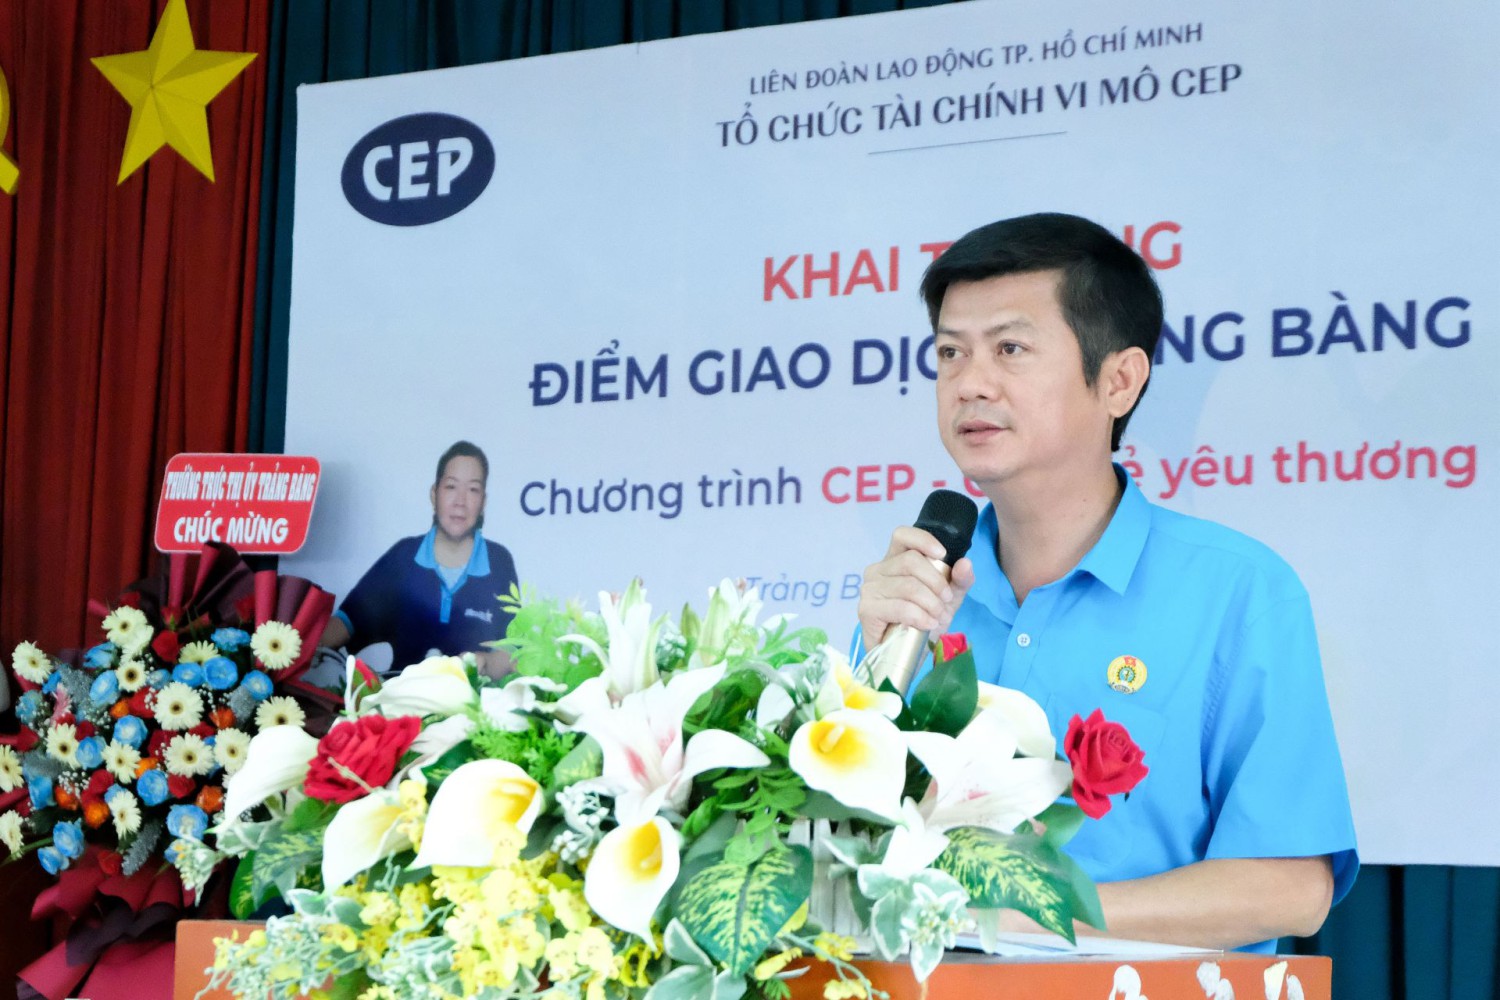 Ông Trần Lê Duy- Chủ tịch Liên đoàn Lao động tỉnh Tây Ninh phát biểu tại buổi lễ.